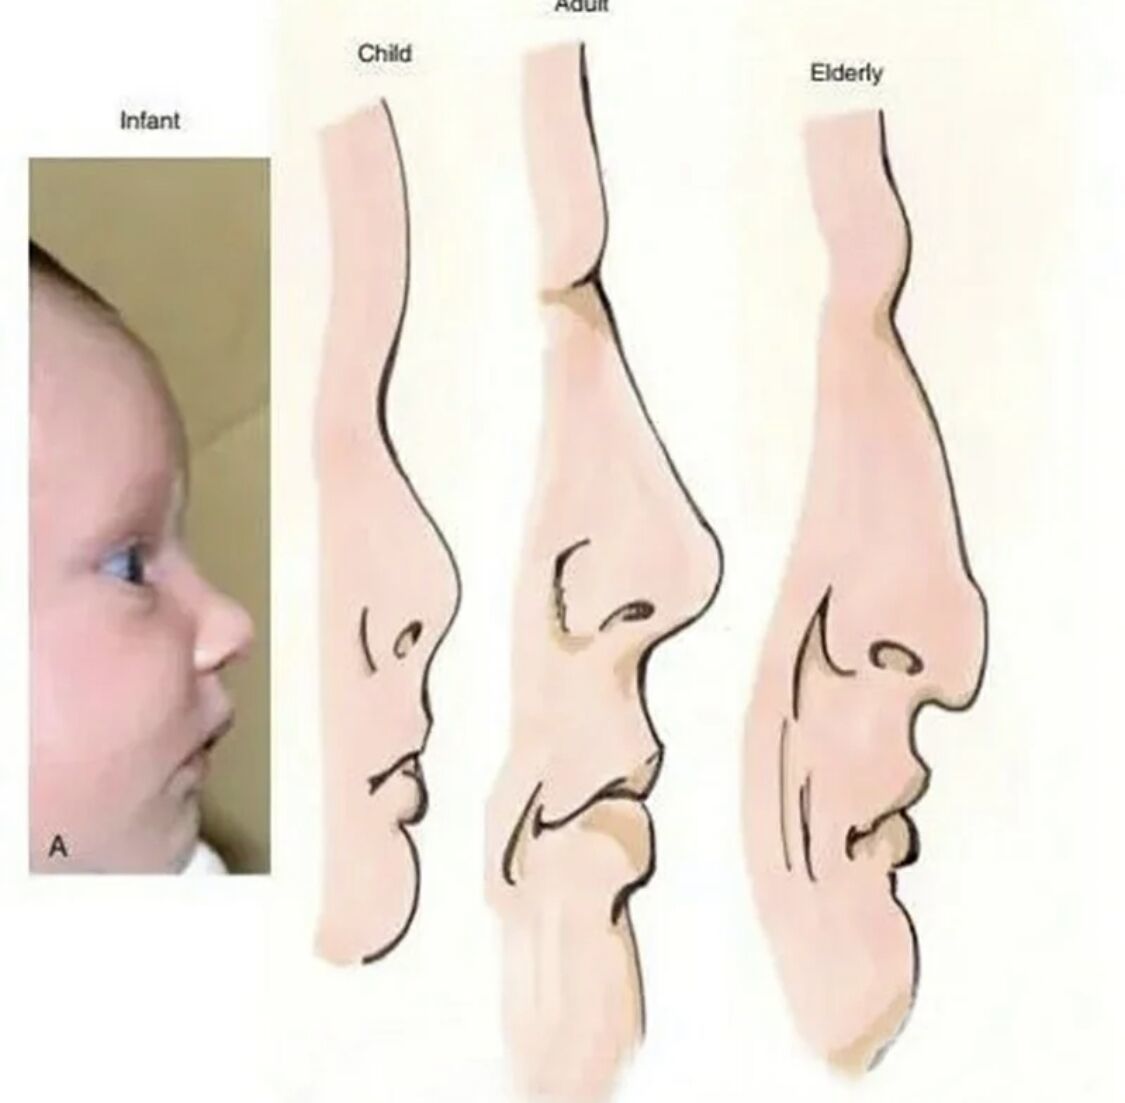 鼻子从小到大变化图图片